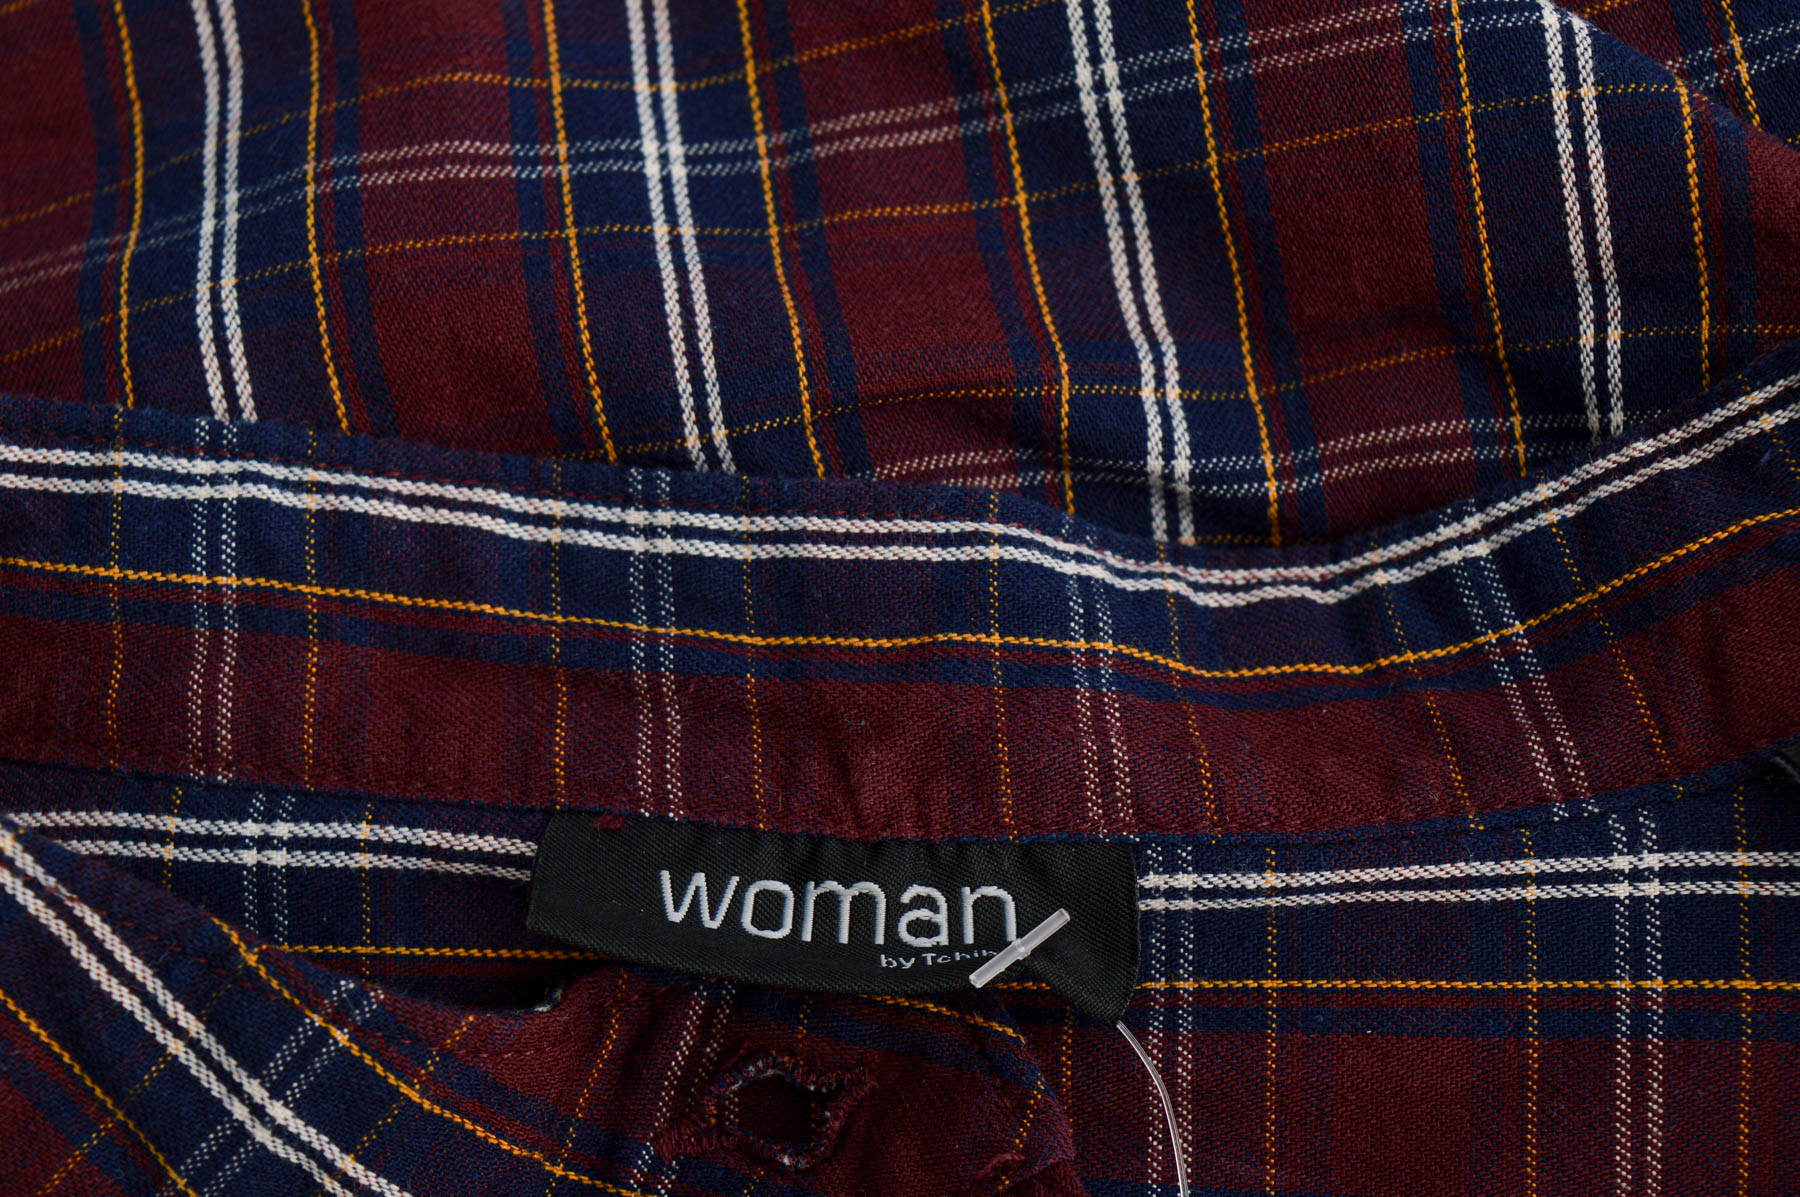 Γυναικείо πουκάμισο - Woman by Tchibo - 2